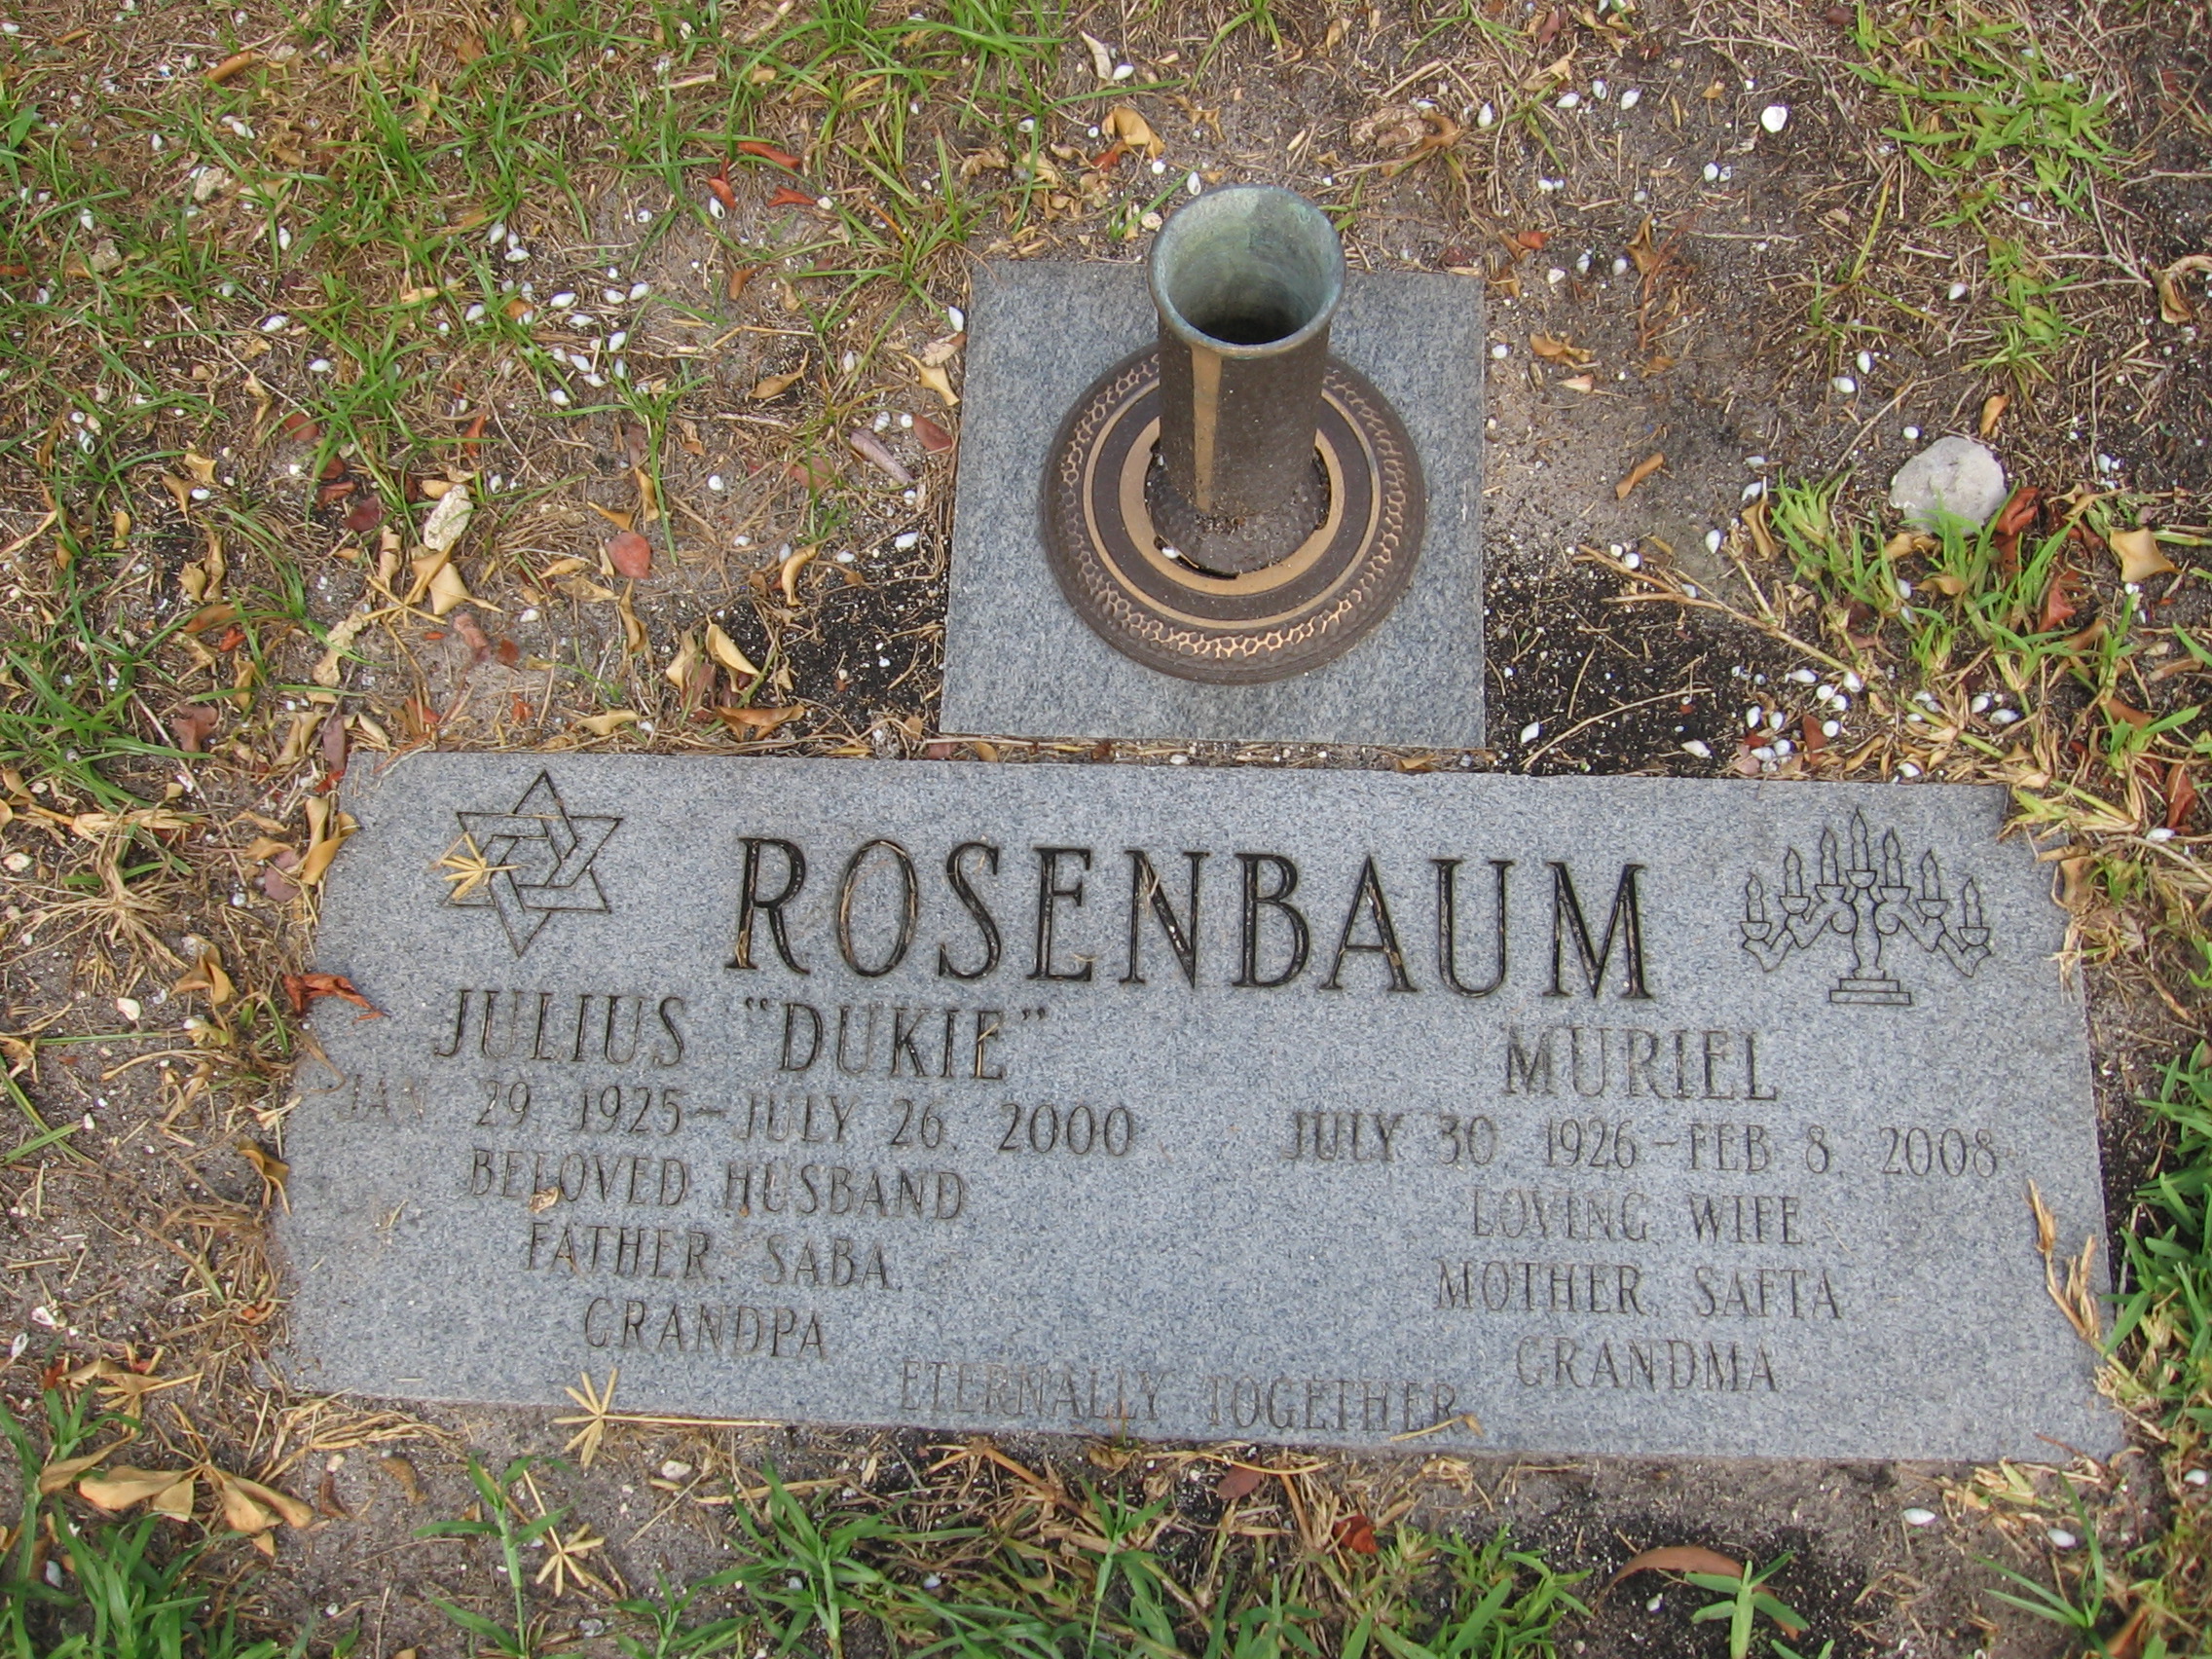 Julius "Dukie" Rosenbaum